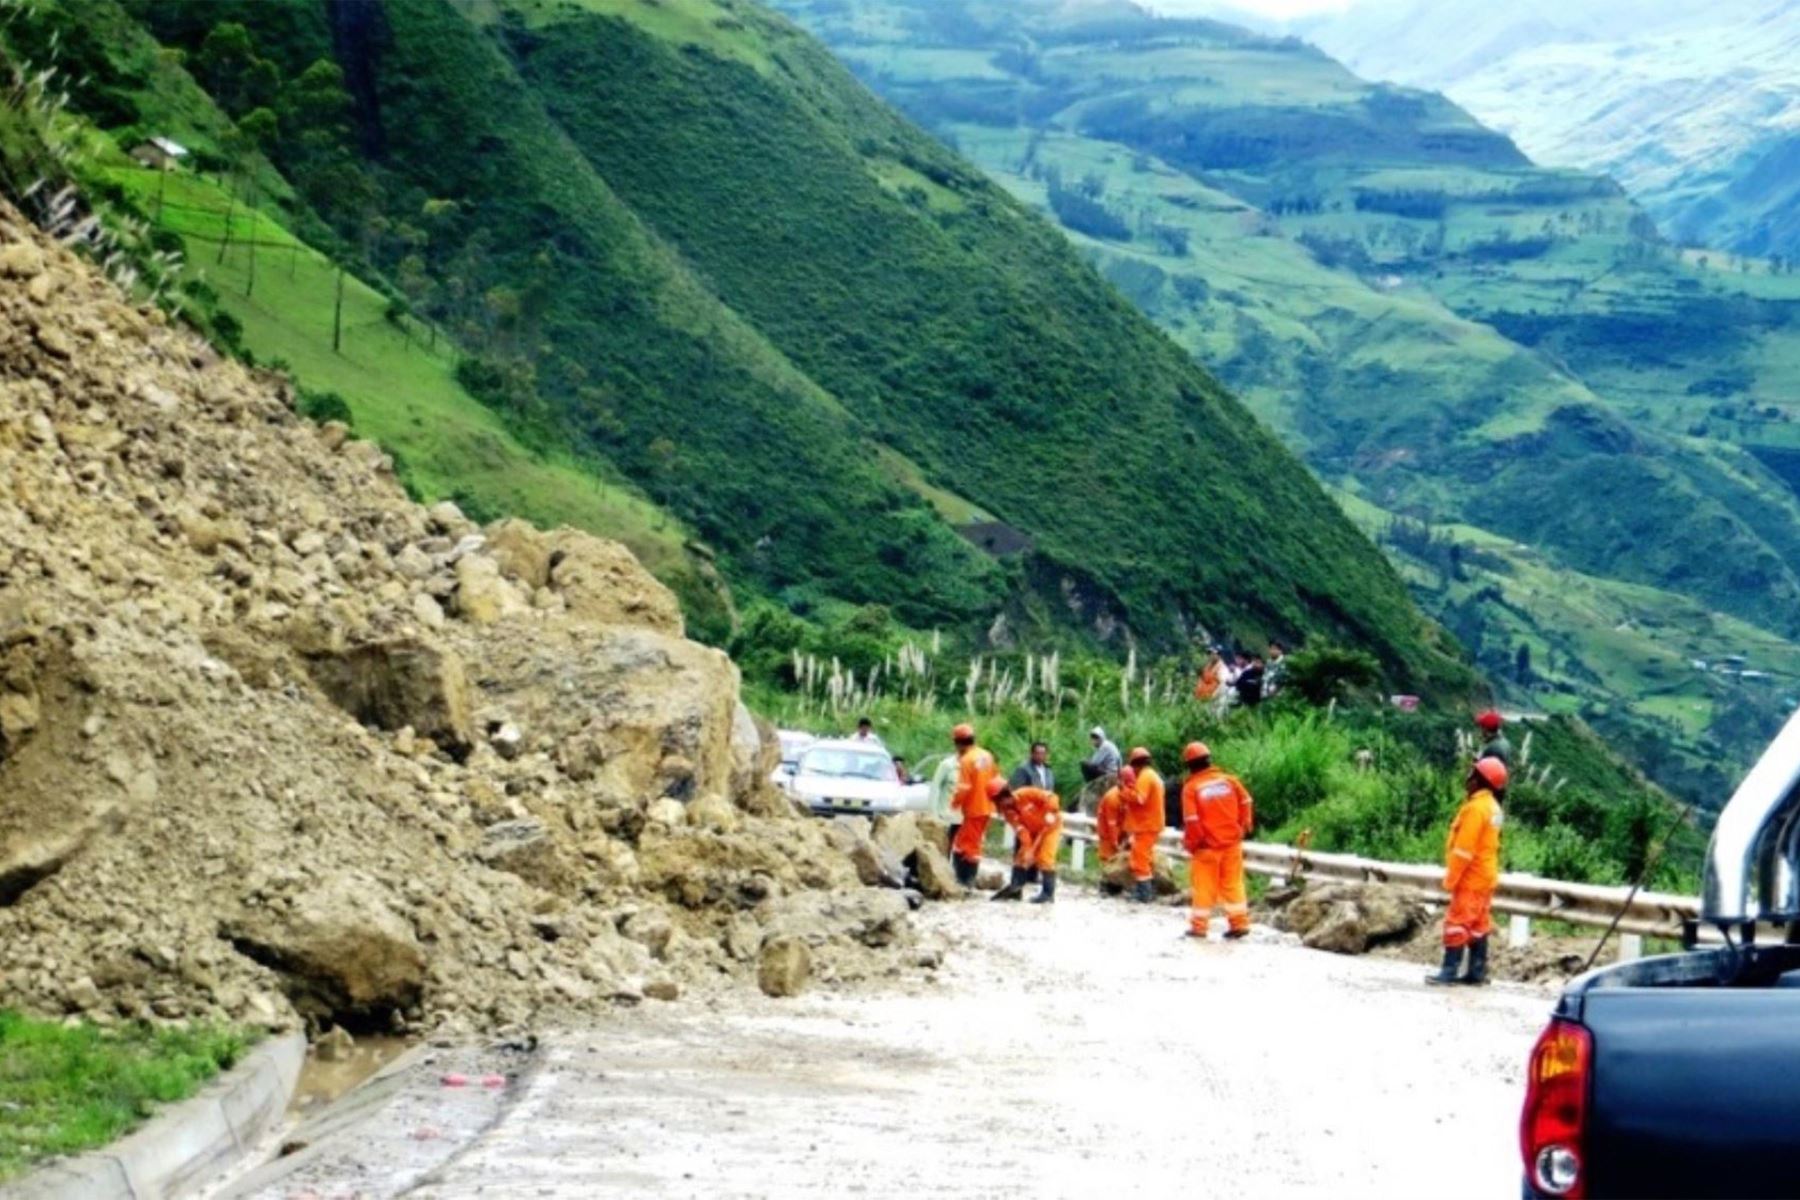 Cajamarca pide asistencia en combustible al MTC para el mantenimiento de carreteras afectadas por lluvias intensas. Foto: ANDINA/Difusión.